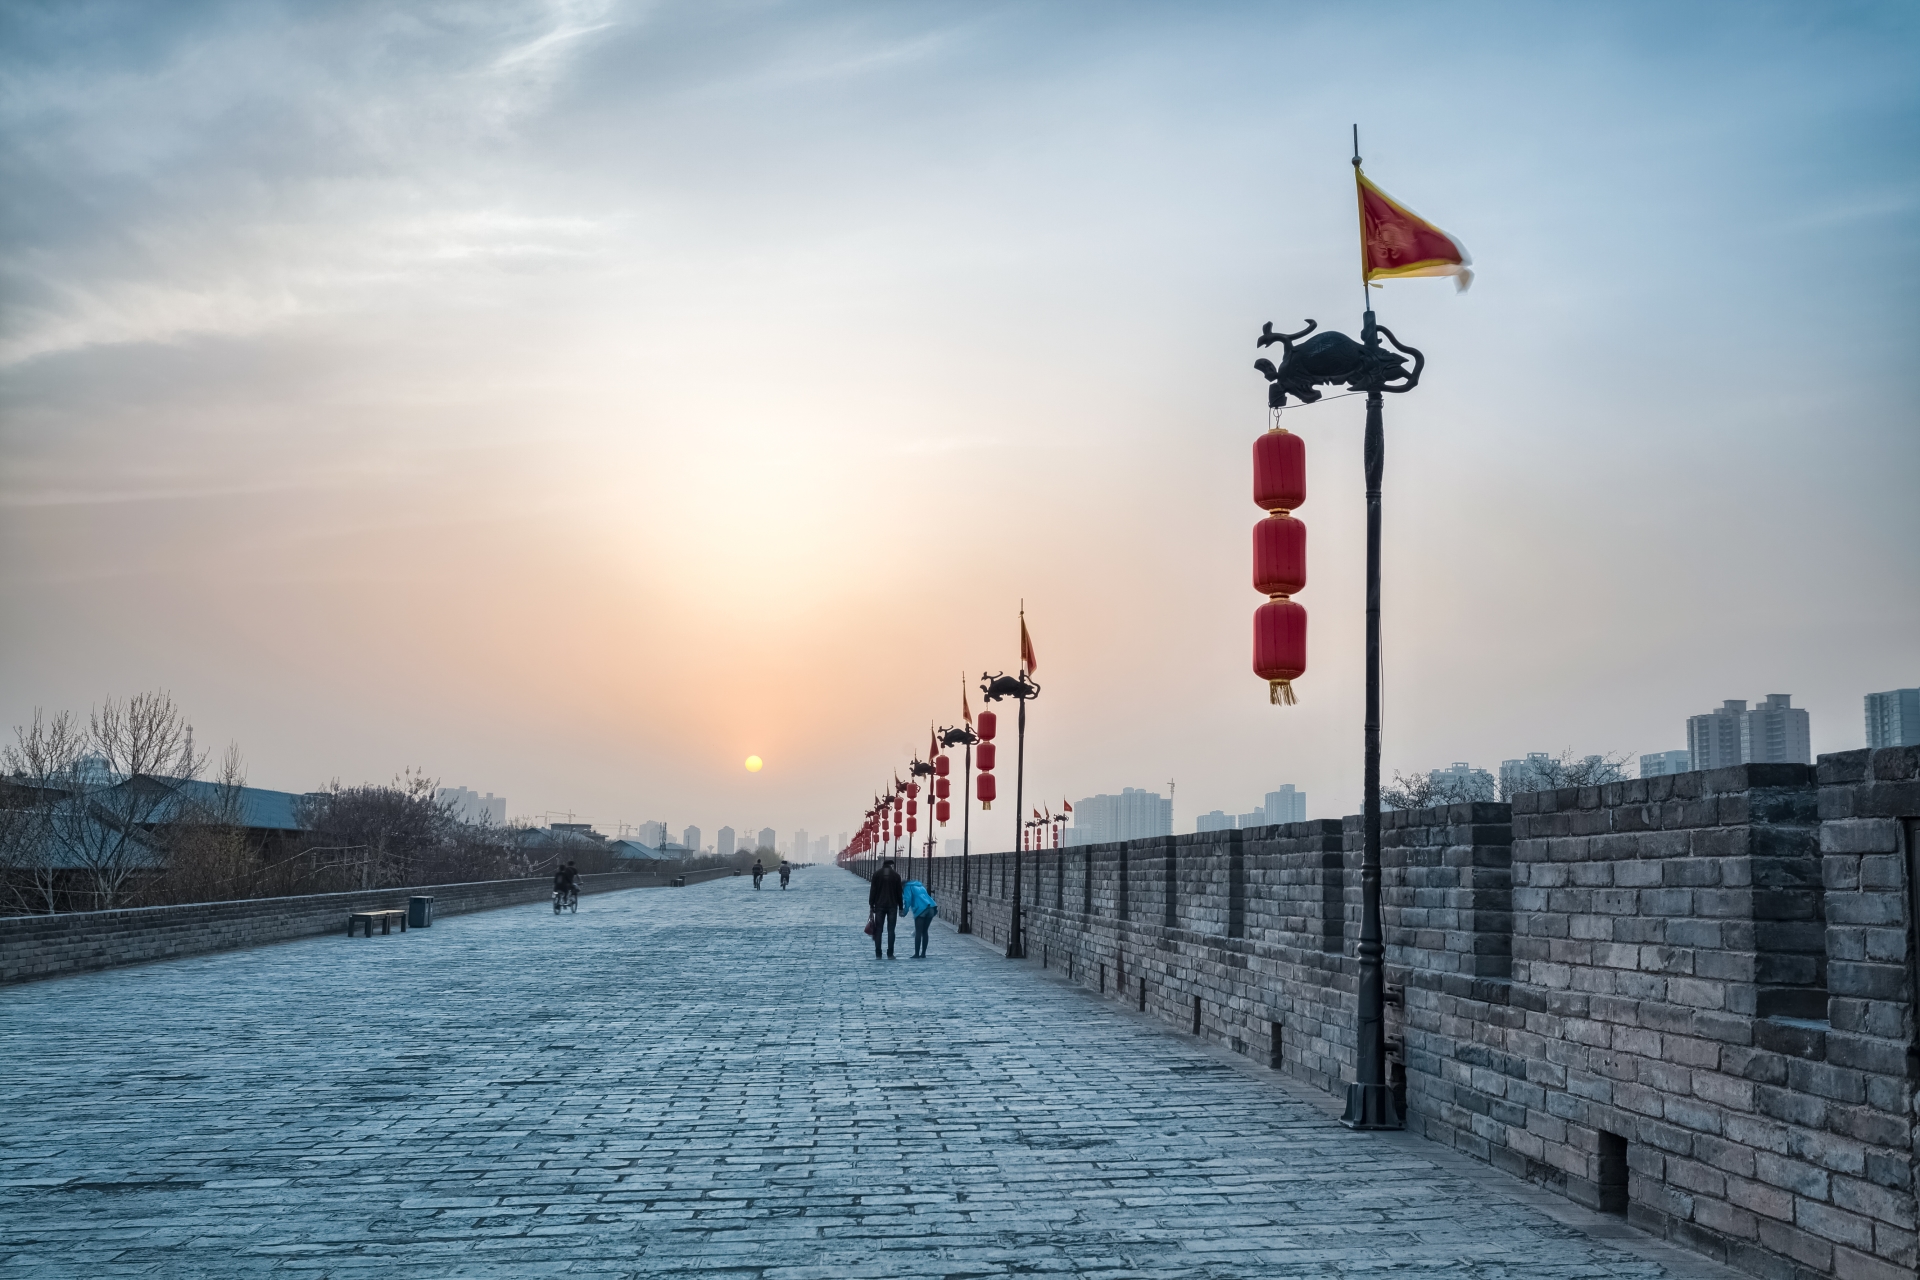 City Walls of Xian - 